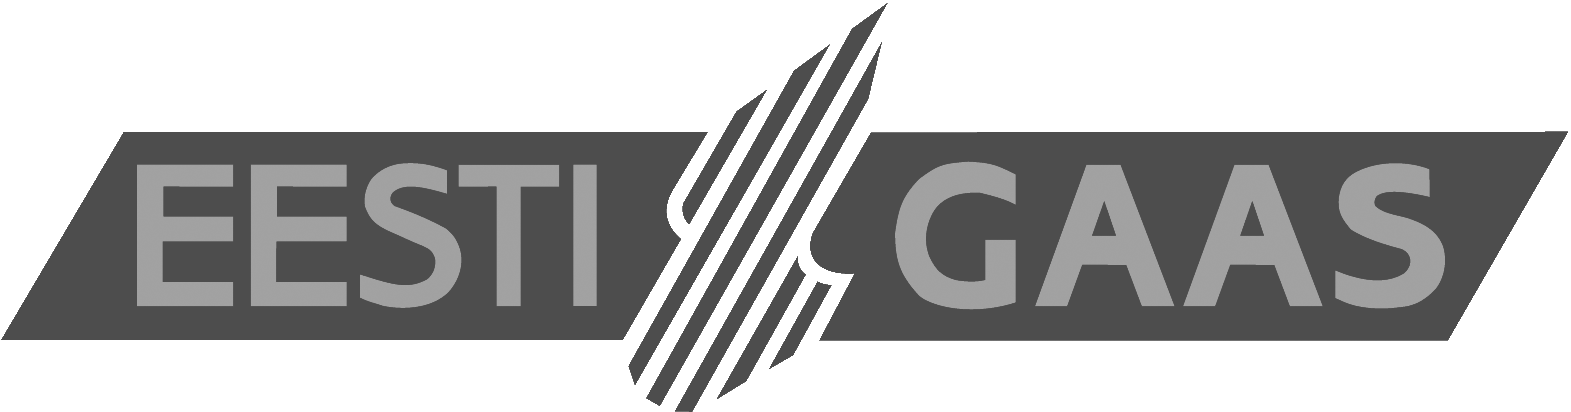 logo-eestigaas